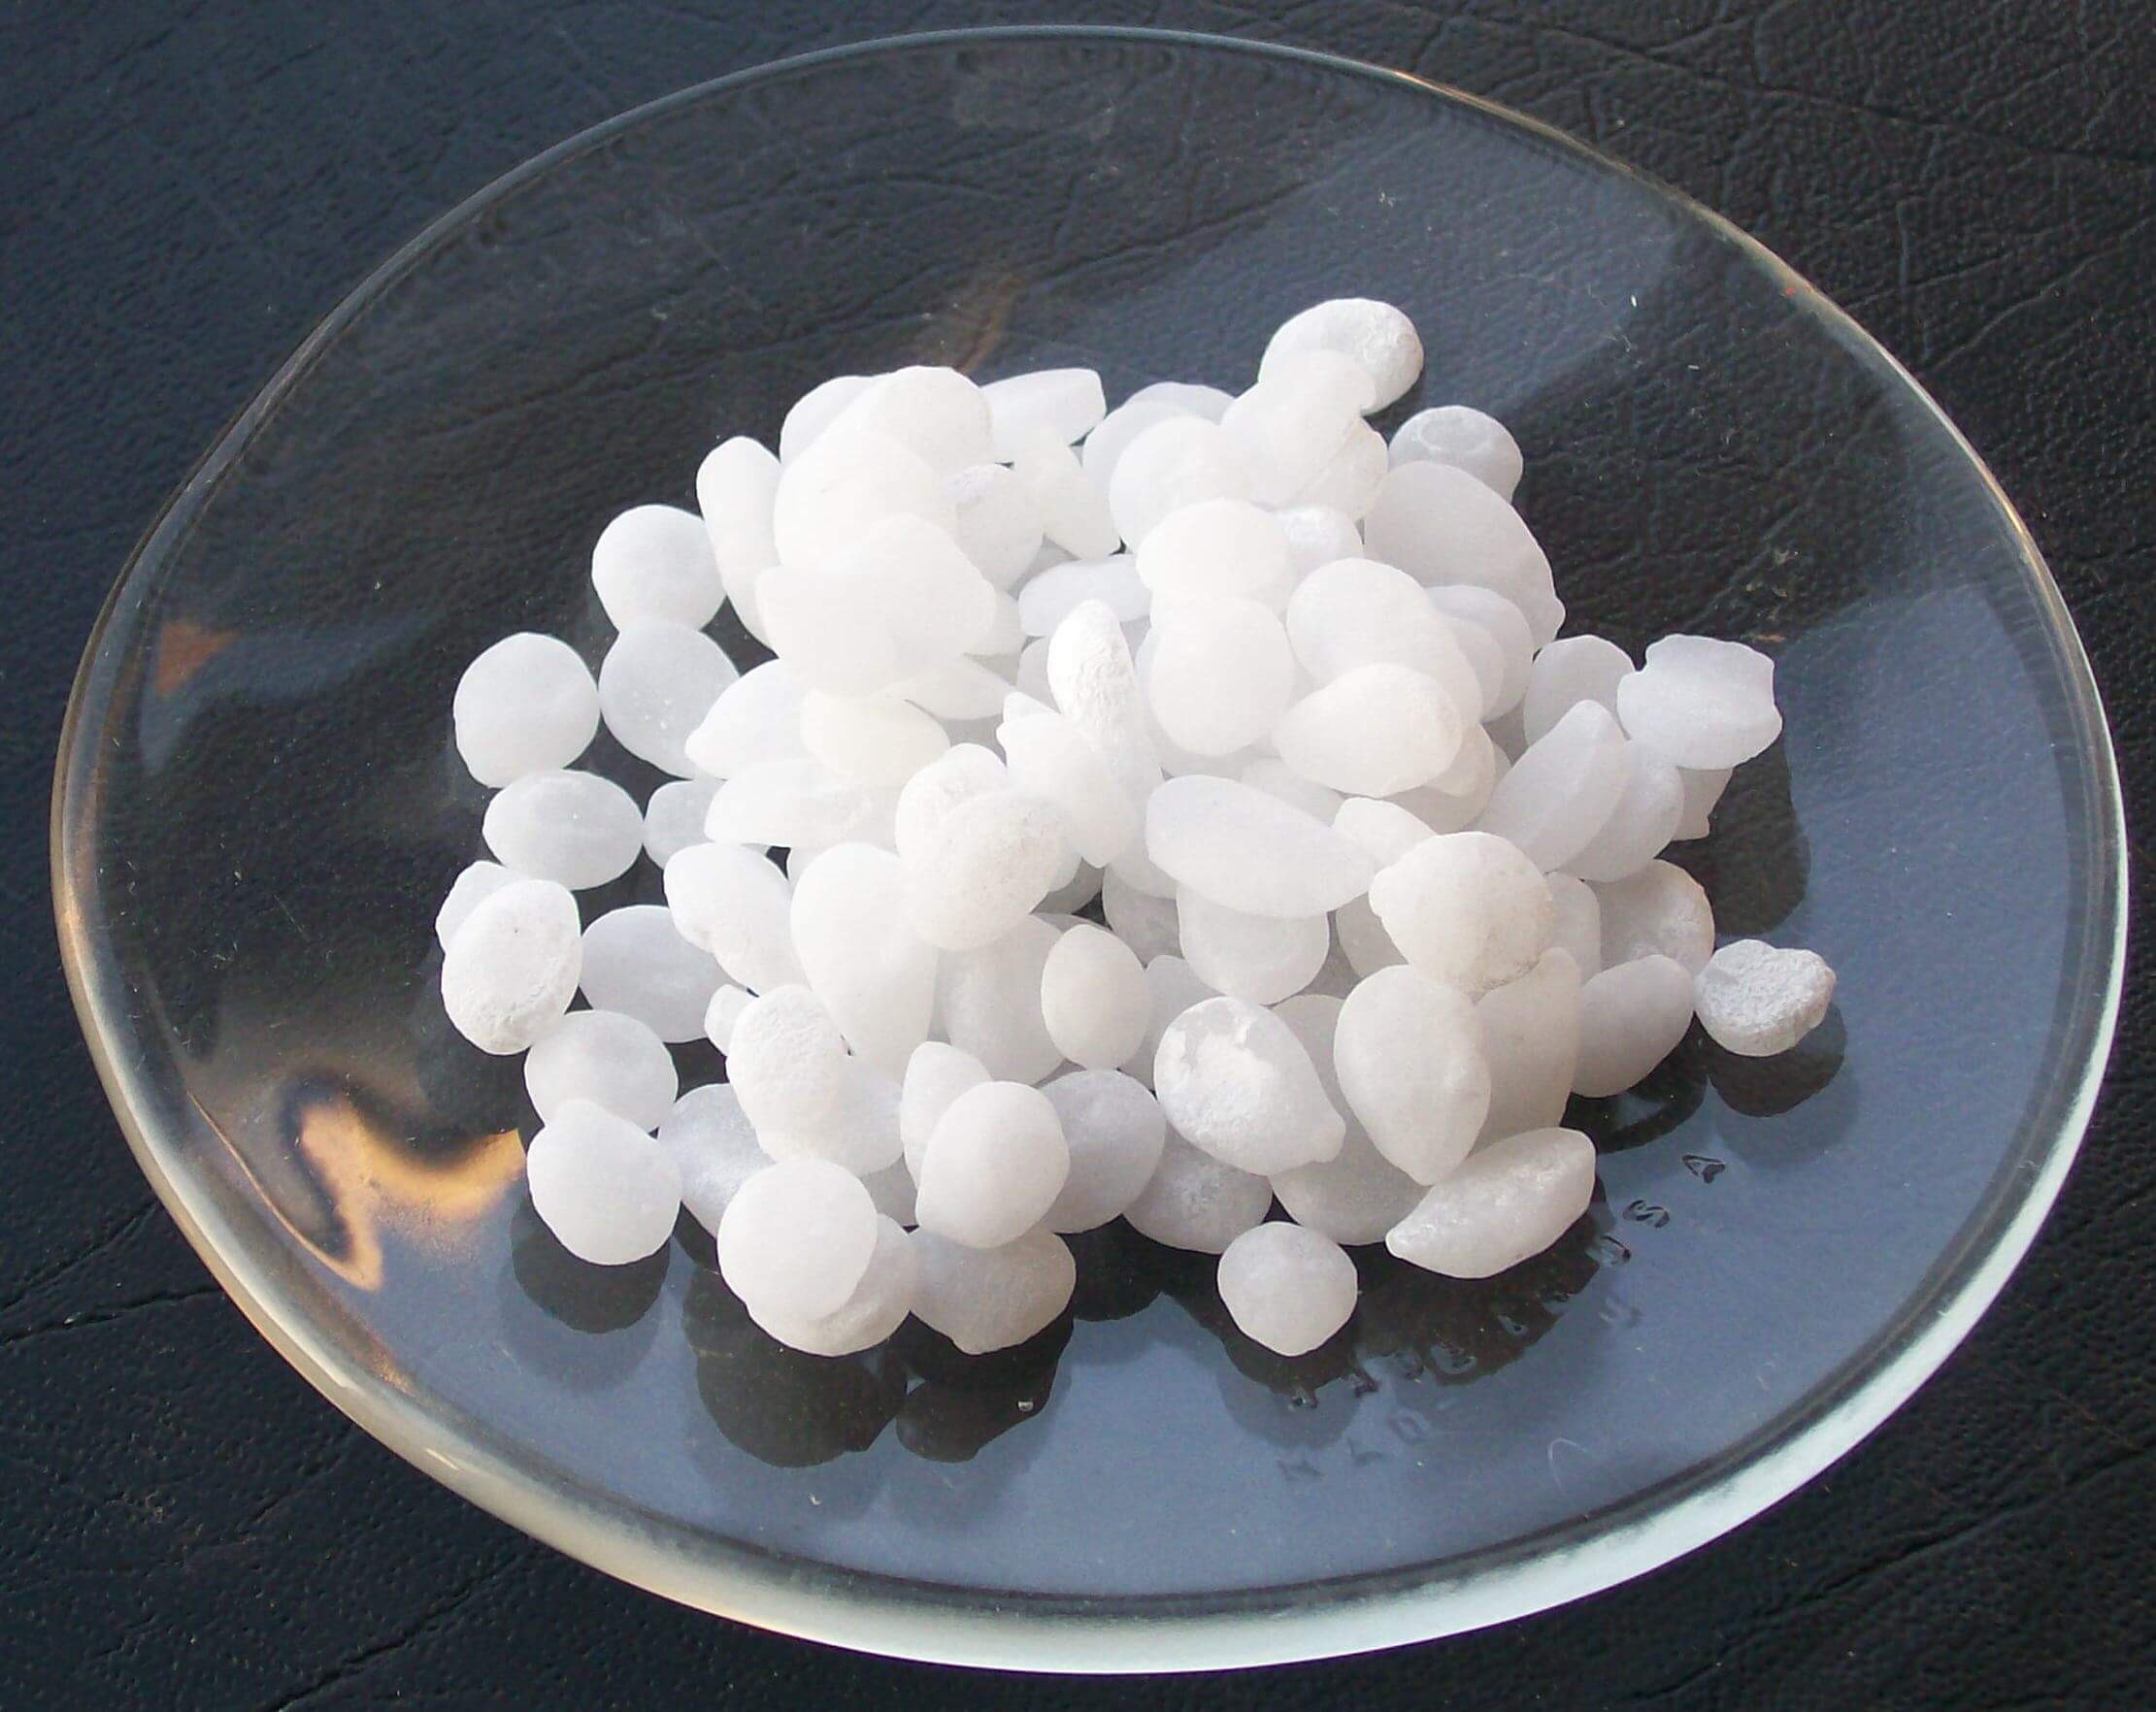 Natri hidroxit (NaOH) là chất gì và được sử dụng trong lĩnh vực nào?
